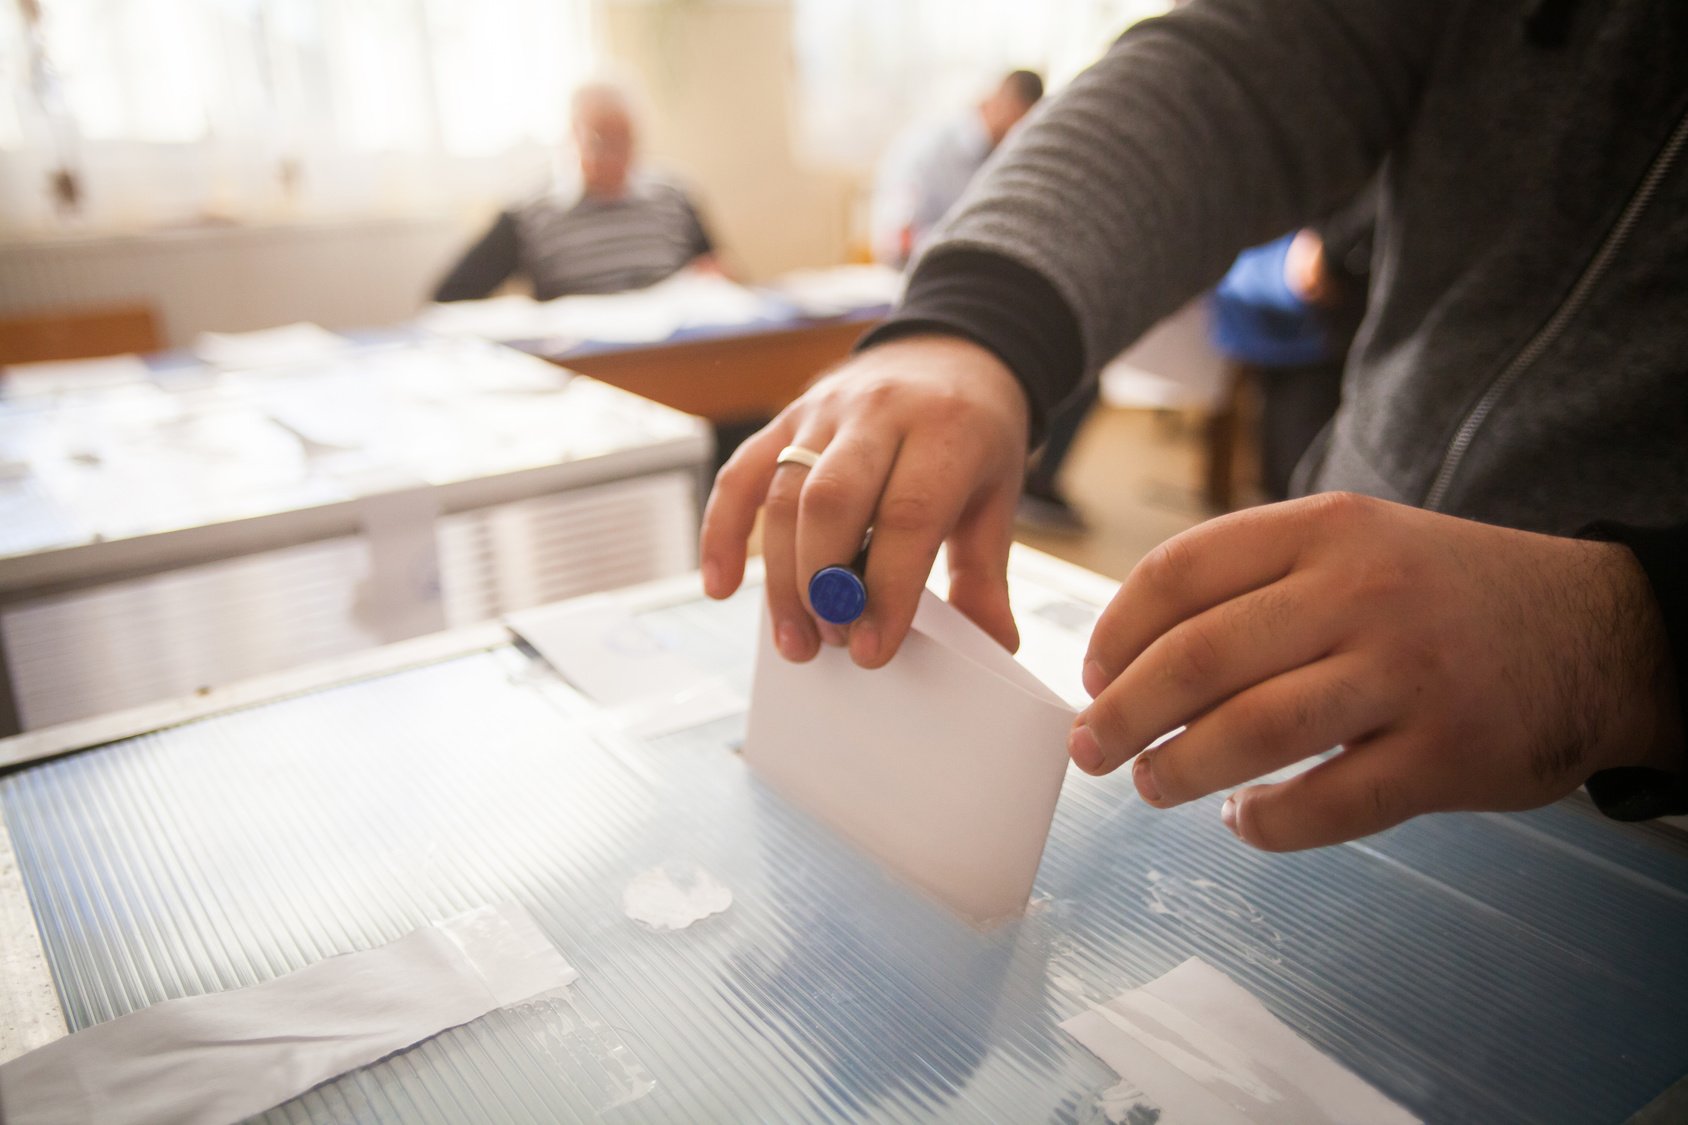 Υπουργείο Εργασίας: Πώς θα χορηγηθεί η ειδική εκλογική άδεια στον ιδιωτικό τομέα